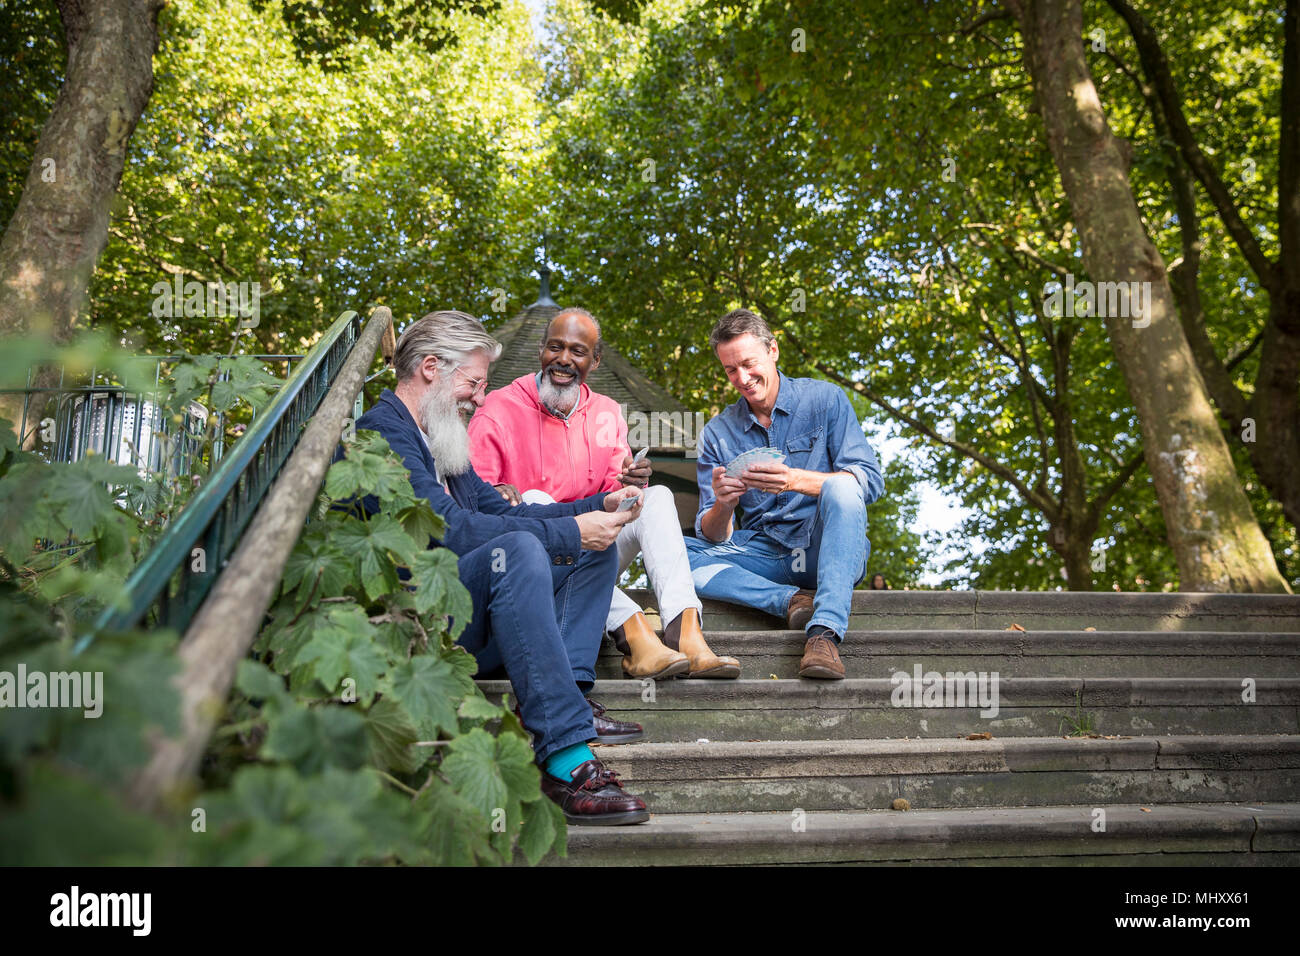 Trois hommes d'âge mûr, à l'extérieur, assis sur les marches, des cartes à jouer, low angle view Banque D'Images